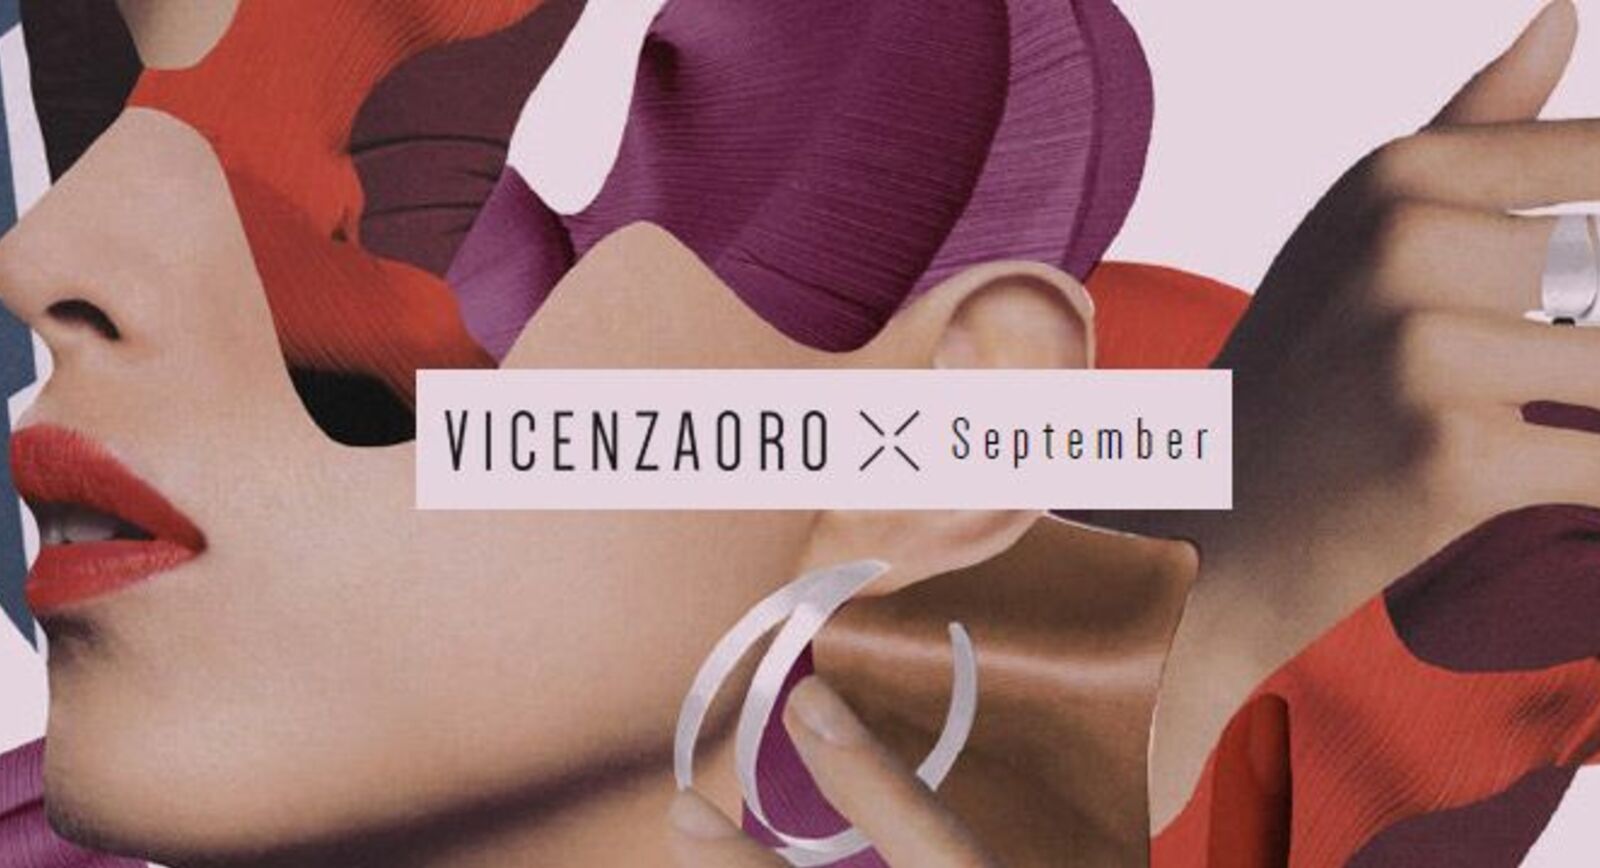 5 брендов, которым стоит уделить внимание на VicenzaOro